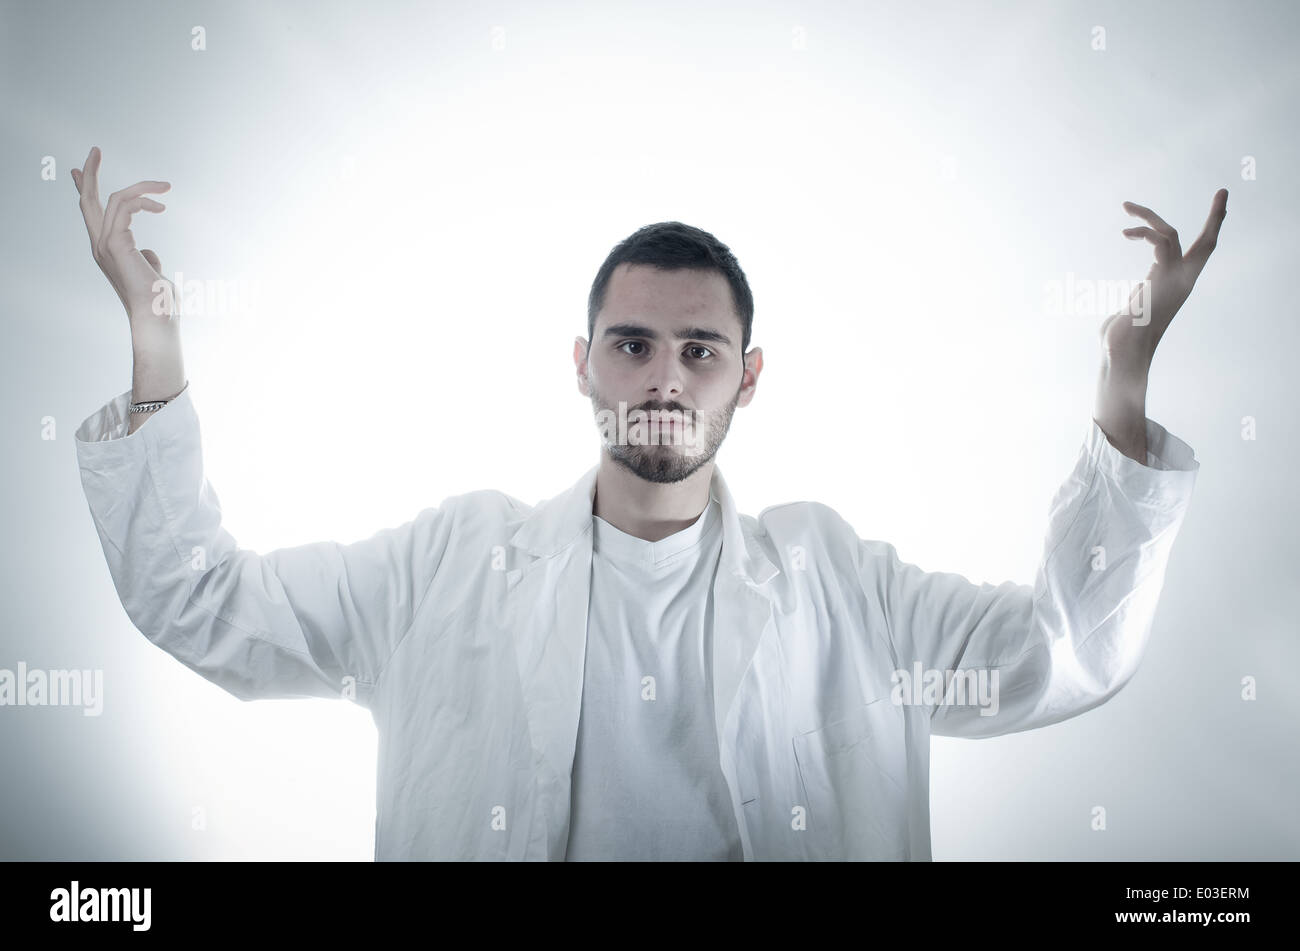 Un joven, Todo-poderoso investigador/estudiante/doctor vistiendo una bata blanca sobre un fondo blanco. Foto de stock